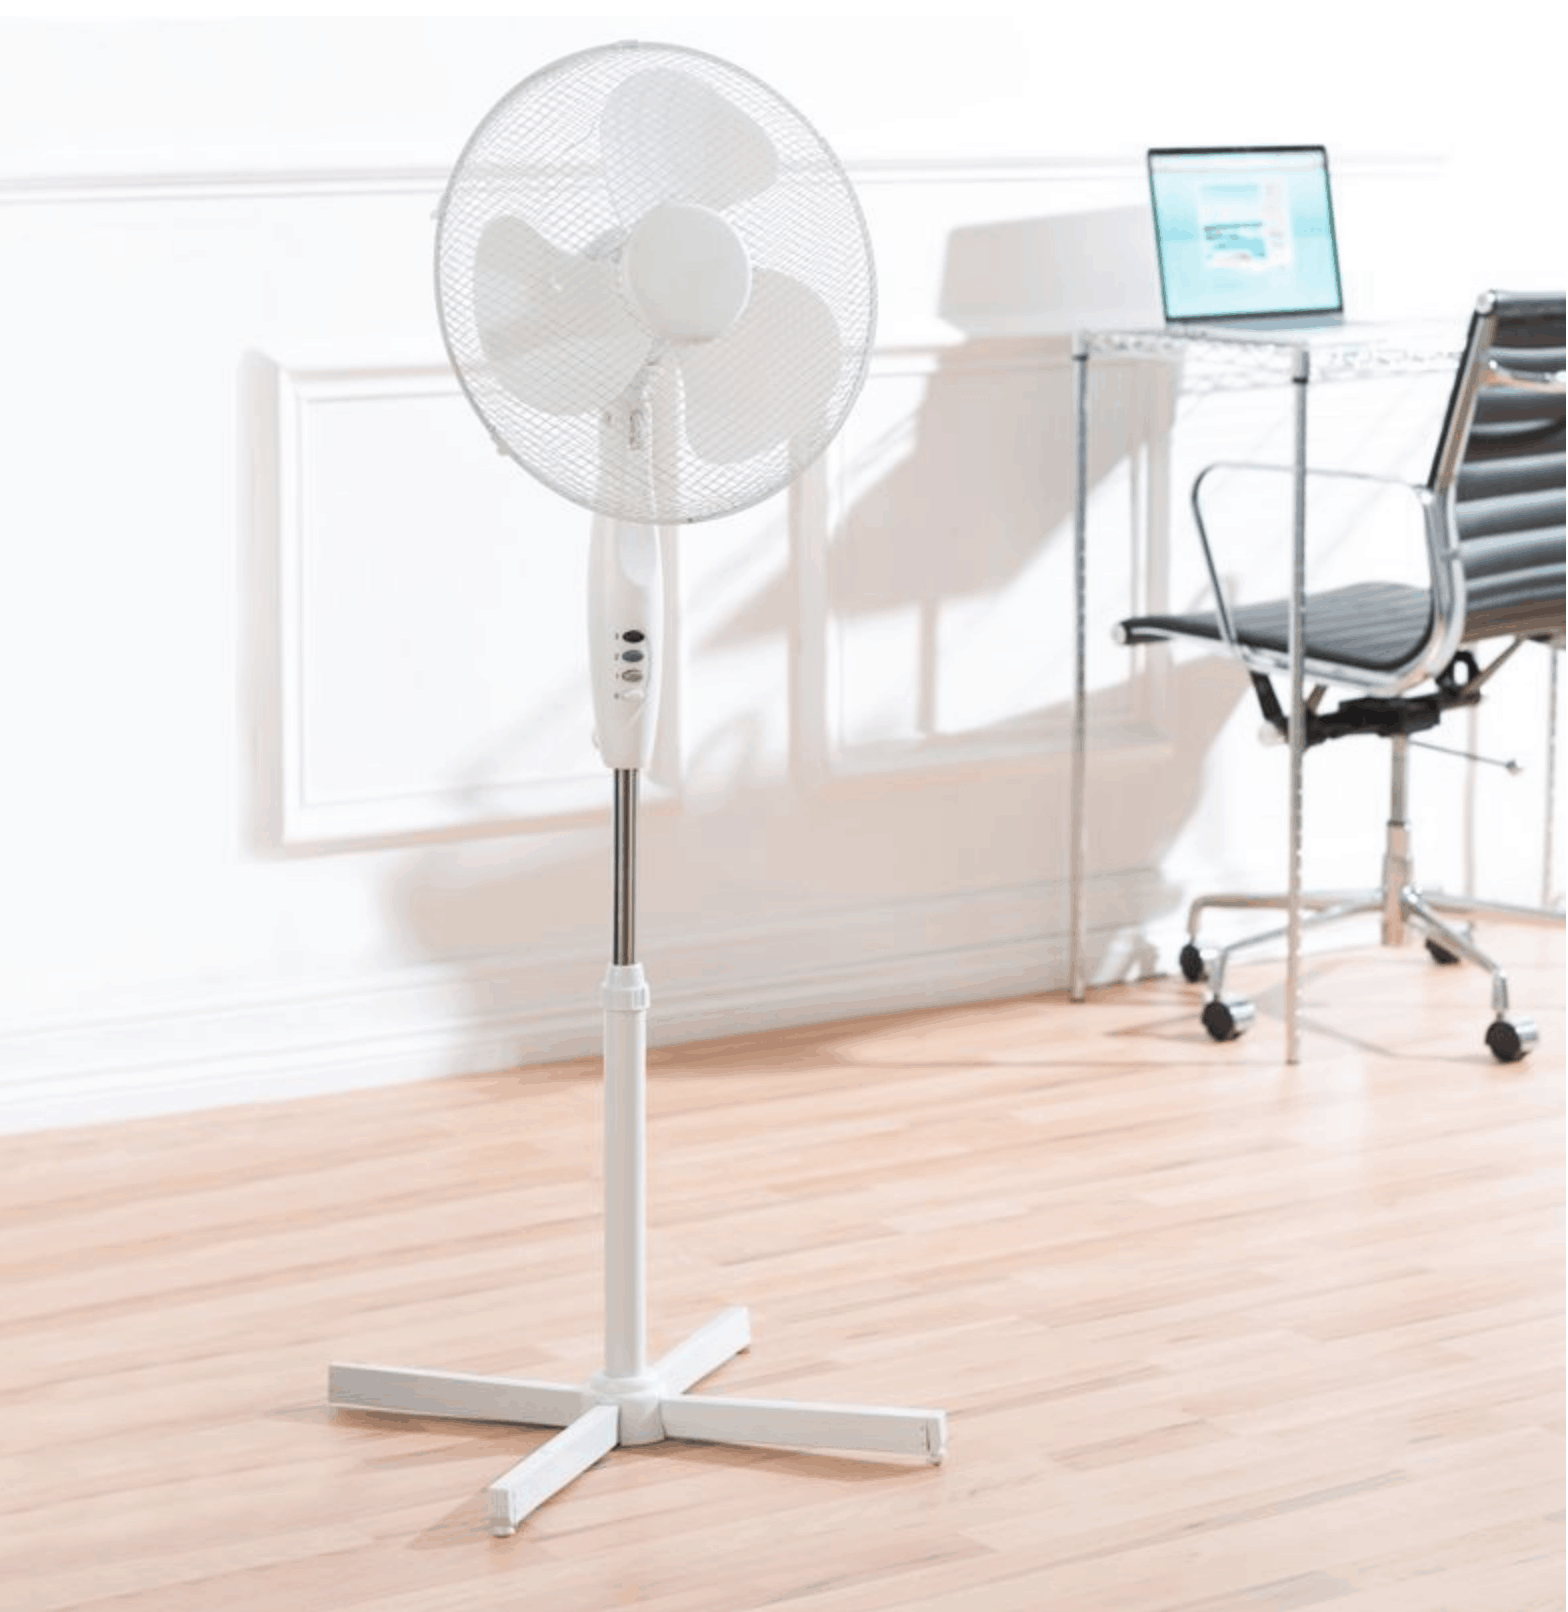 Clean a standing fan